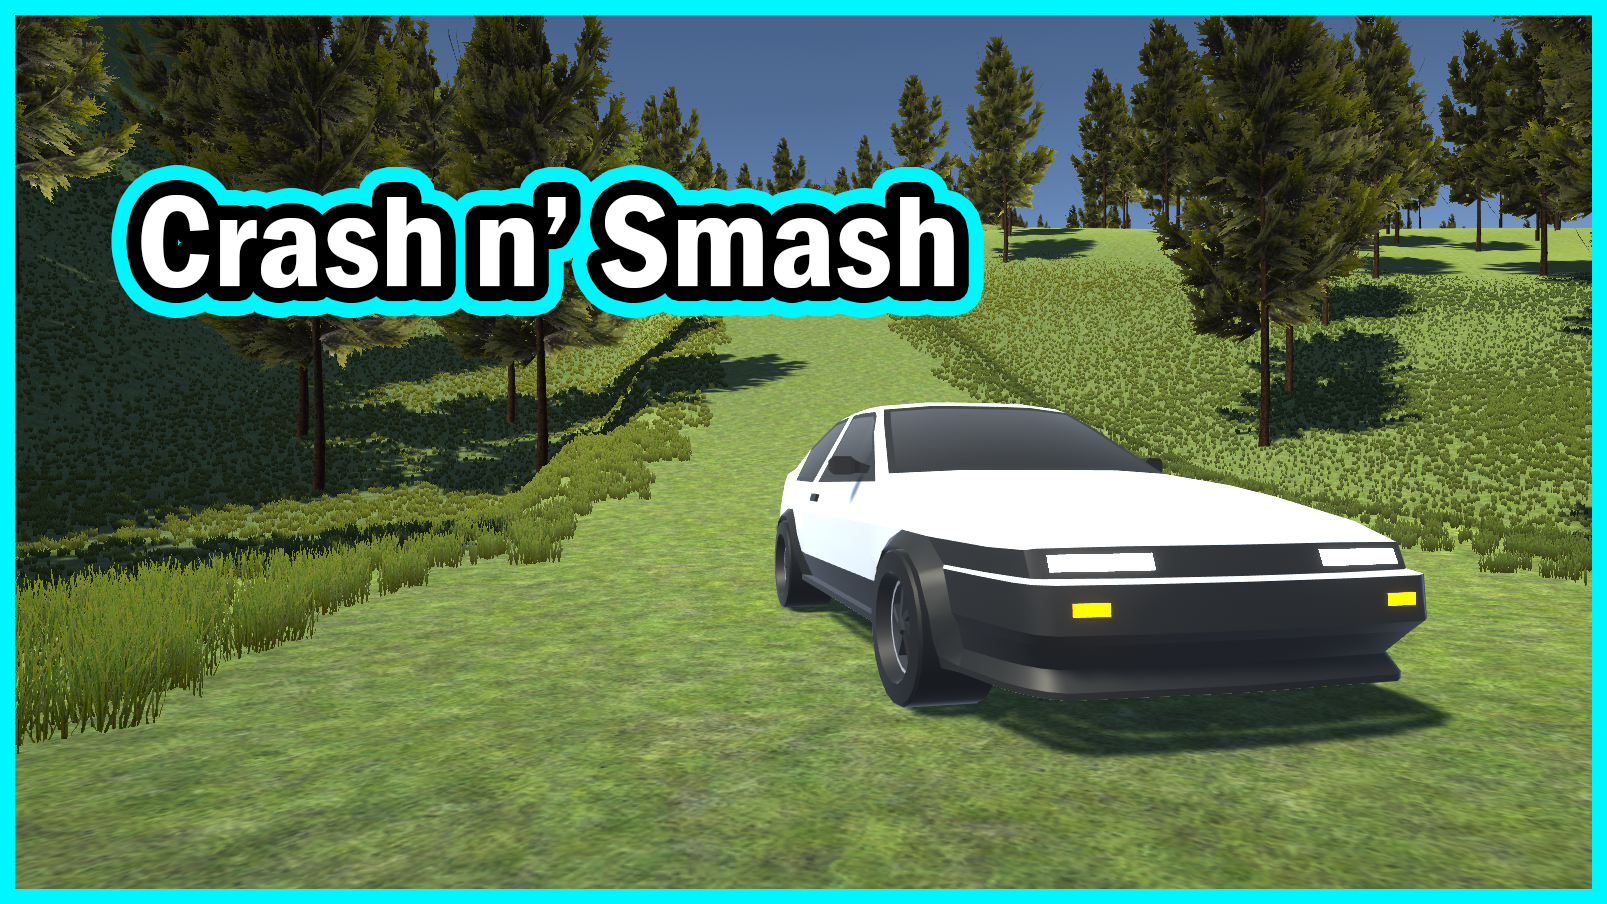 Crash n' Smash